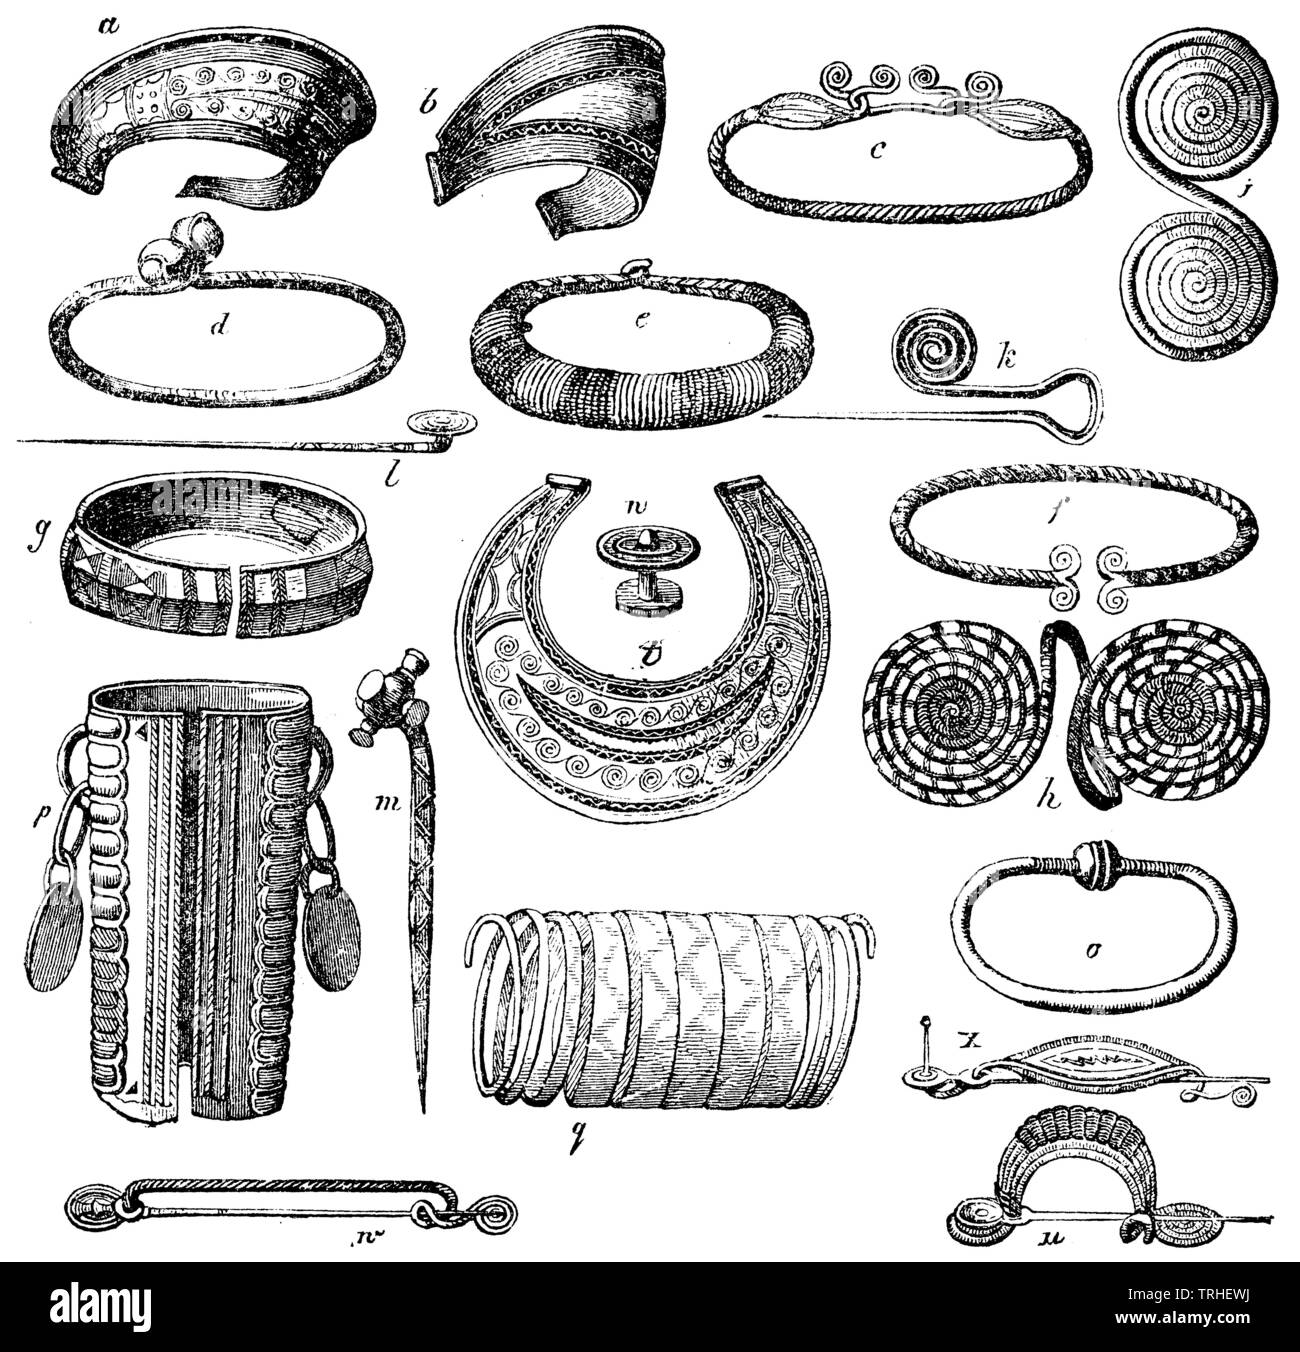 Antique bronze bijoux. a, b) diadèmes. c, d e)des couronnes, bagues de col. f, g) poignet fermoirs. h, i) Bijoux de bras, Double disques. k, l, m) les aiguilles. n) le double bouton. o) bracelet de poignet. p, q) Bijoux de bras. u, w, x) fibules, , (1874), livre d'anthropologie Banque D'Images